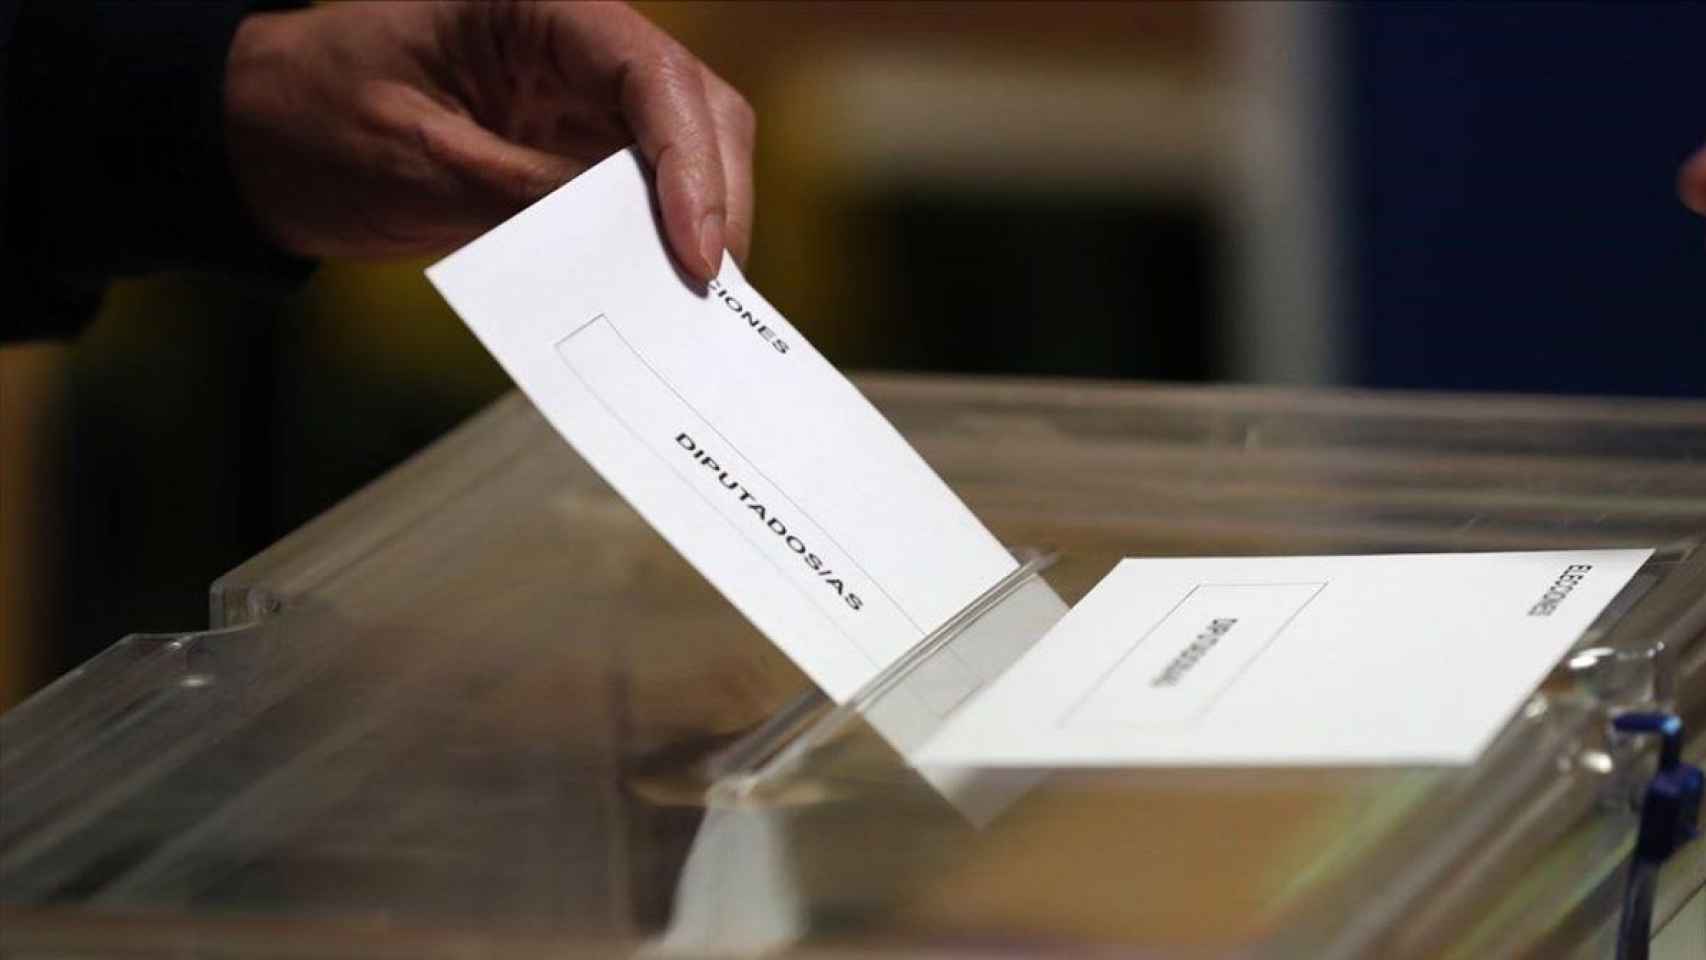 El Español publicará un sondeo con pronóstico de votos y escaños al cerrar las urnas a las 20.00 horas